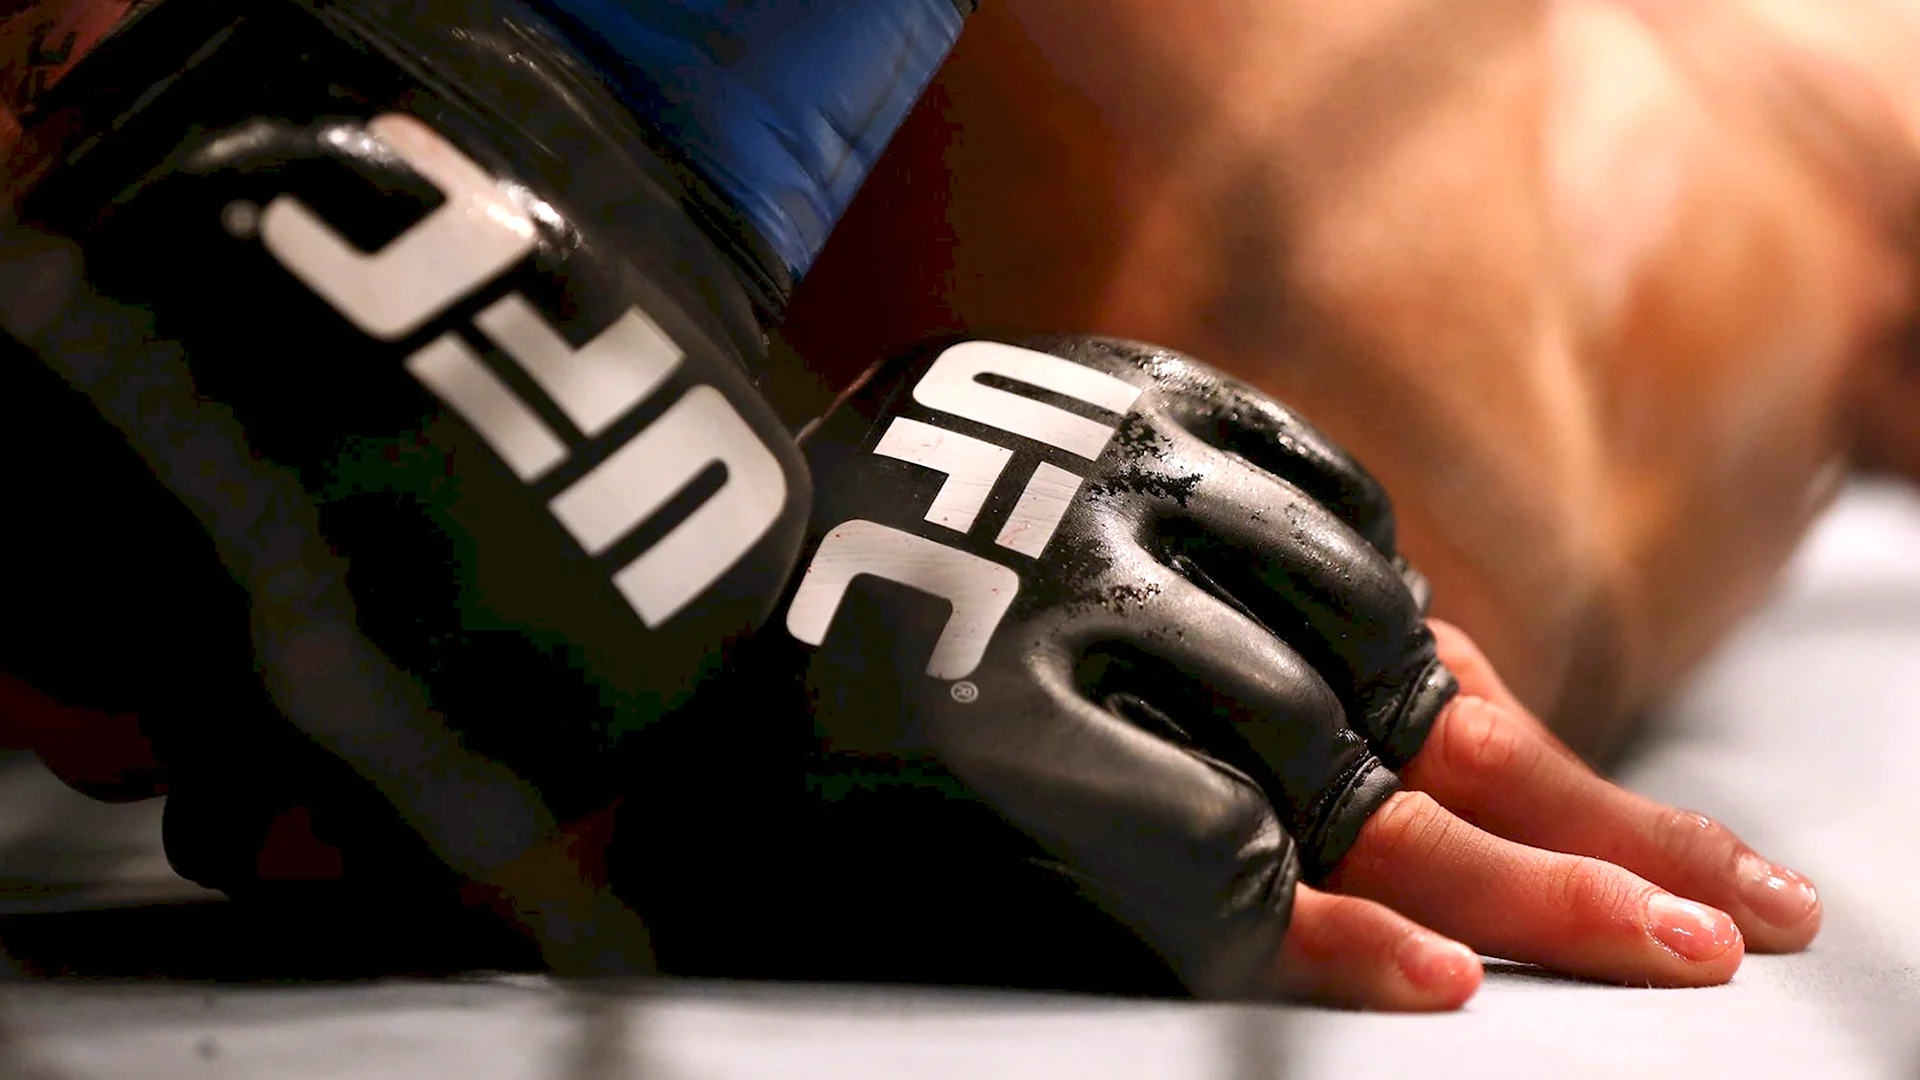 Перчатки бойцов MMA UFC